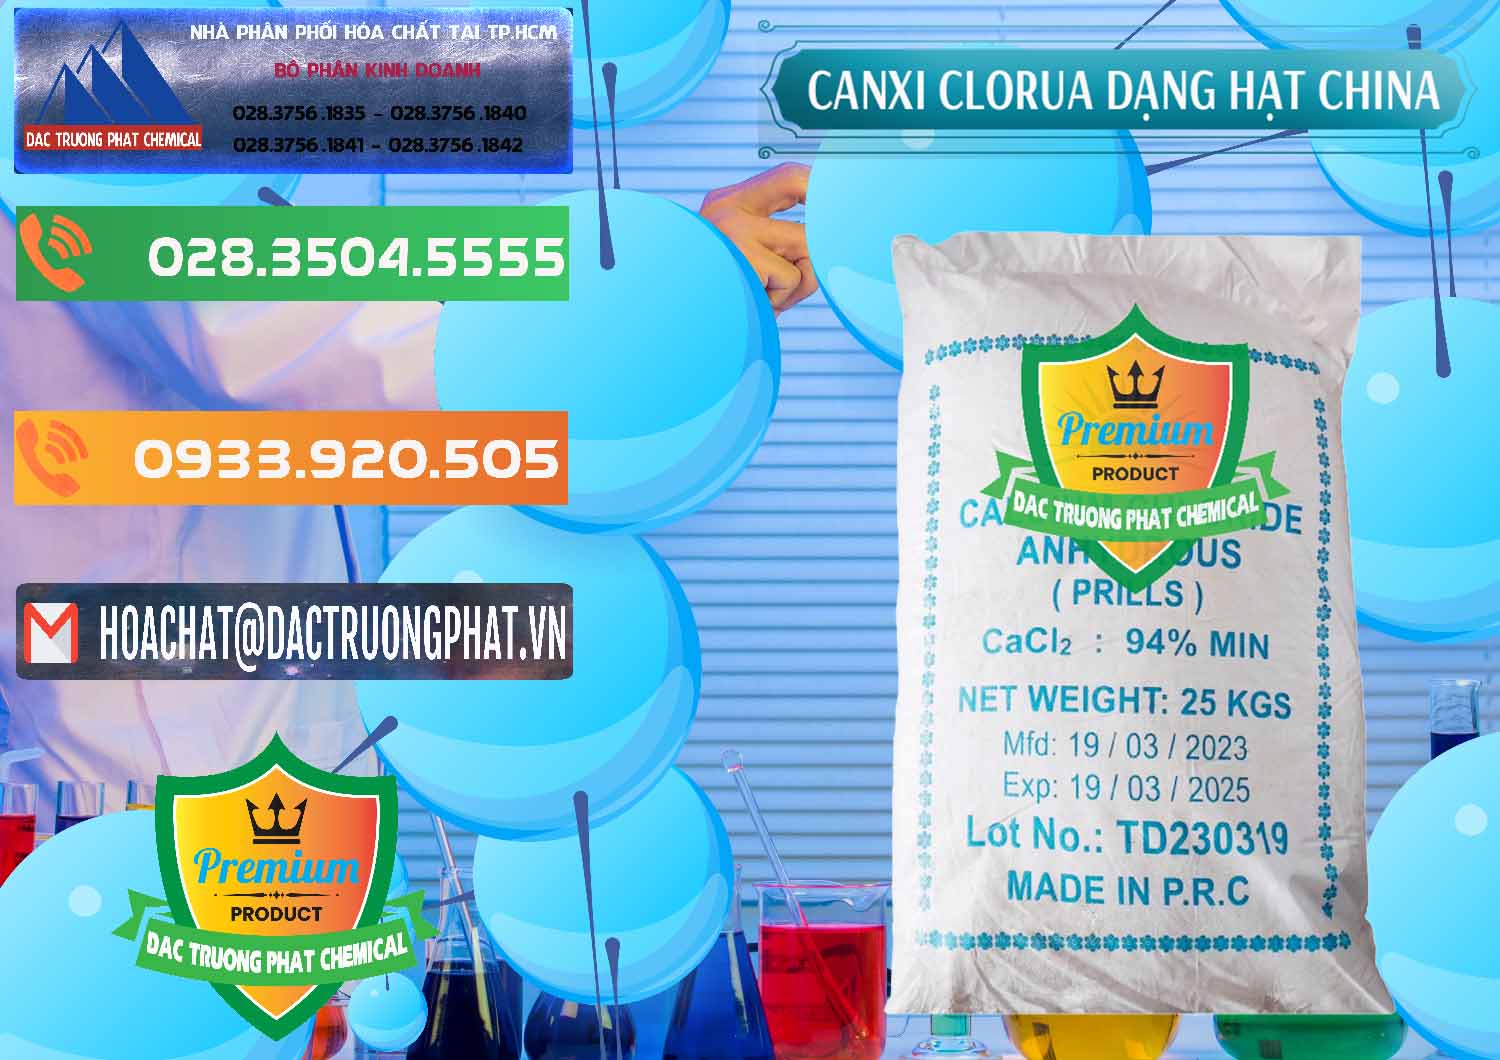 Nơi chuyên bán - phân phối CaCl2 – Canxi Clorua 94% Dạng Hạt Trung Quốc China - 0373 - Công ty phân phối & cung cấp hóa chất tại TP.HCM - hoachatxulynuoc.com.vn